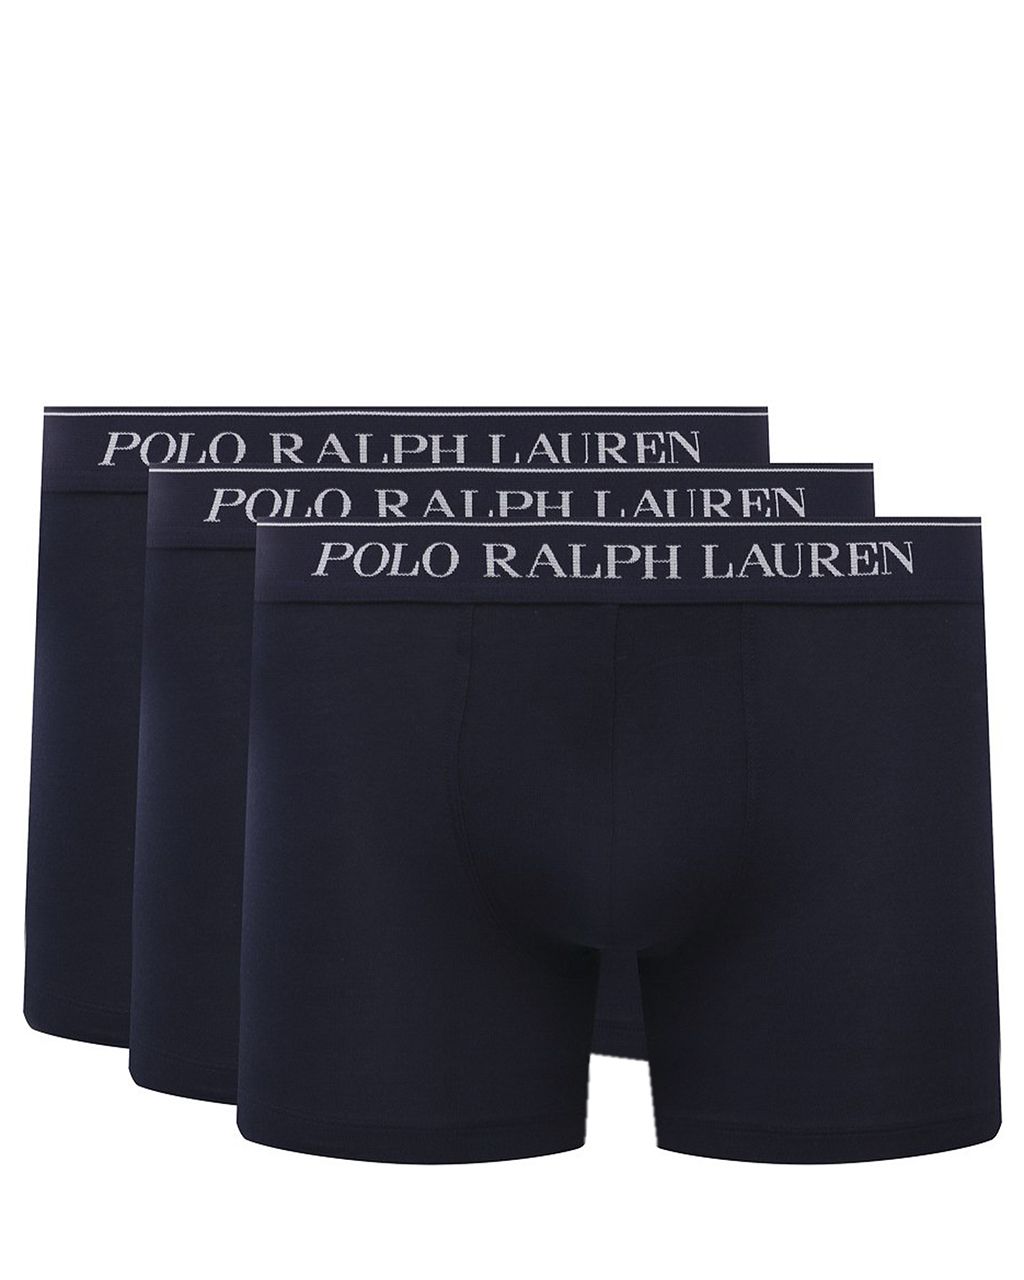 Polo Ralph Lauren - Boxershort Donker blauw 078604-001-L